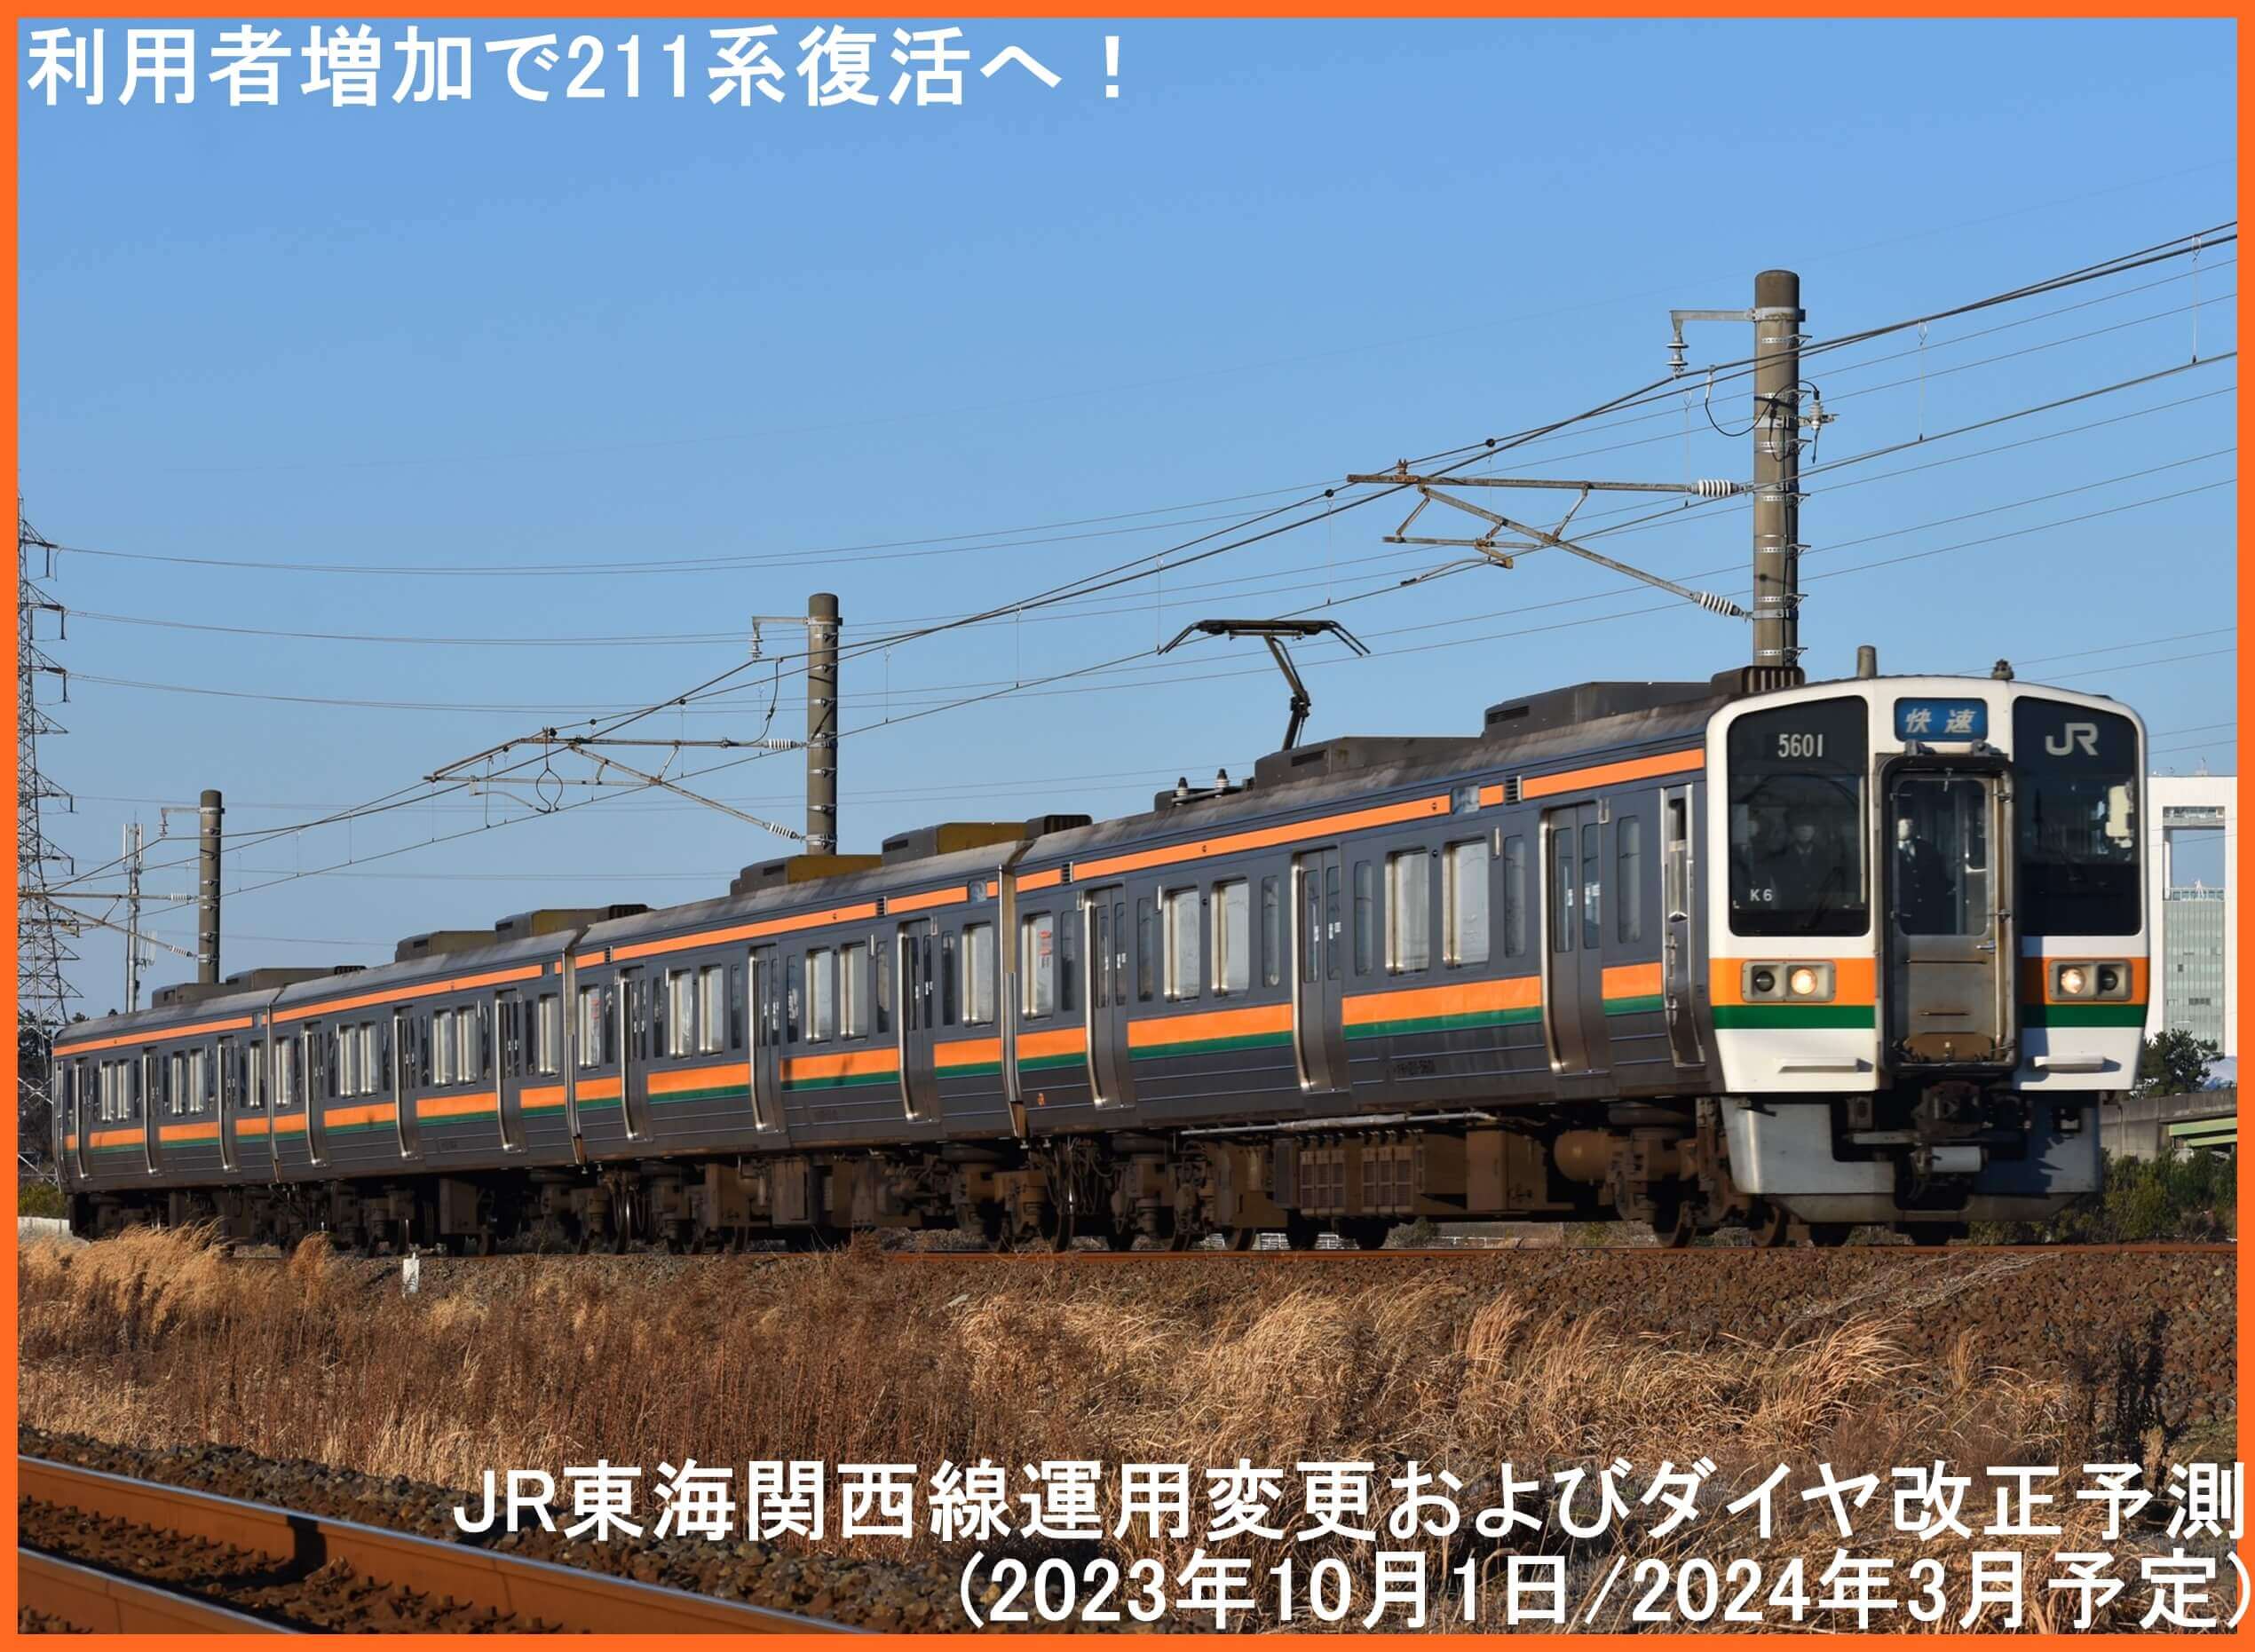 利用者増加で211系復活へ！　JR東海関西線運用変更およびダイヤ改正予測(2023年10月1日/2024年3月予定)